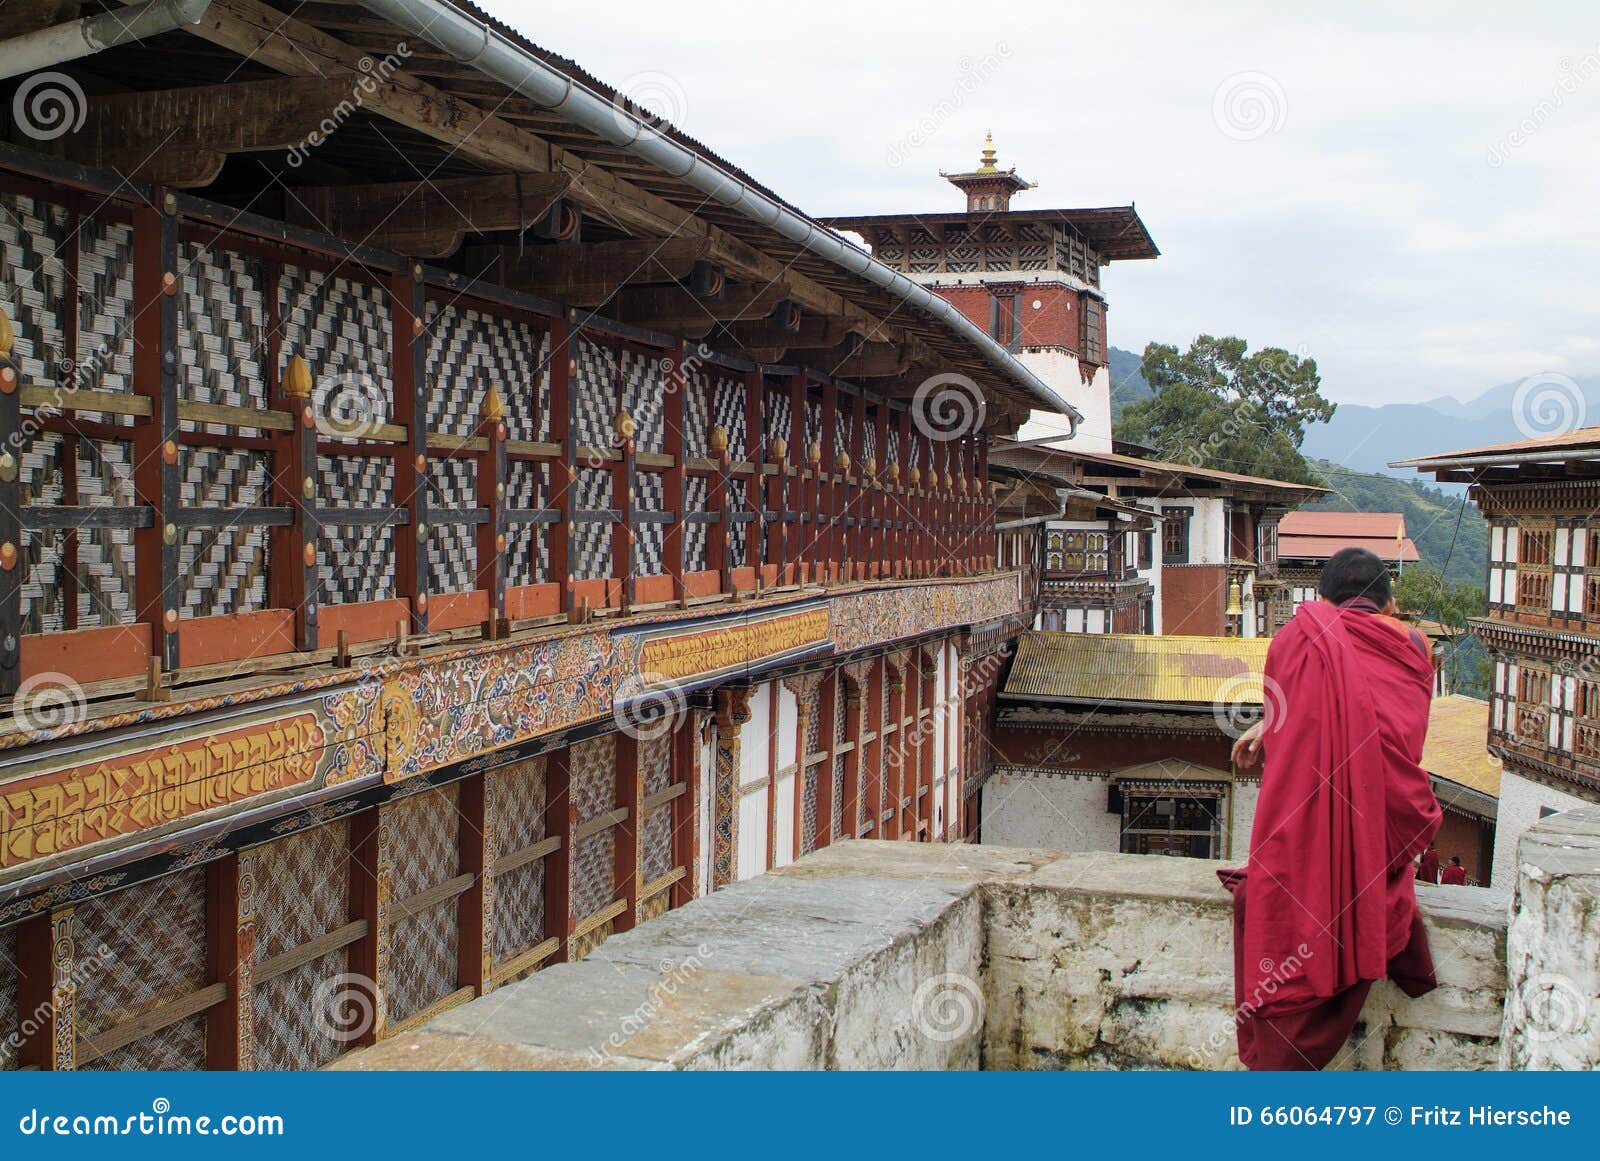 不丹,不丹旅遊,不丹旅遊資訊,不丹資訊,不丹旅遊景點,不丹蜜月旅遊,不丹蜜月旅遊景點,不丹世界遺產,不丹地圖,不丹地鐵,不丹時差,不丹氣溫 ...